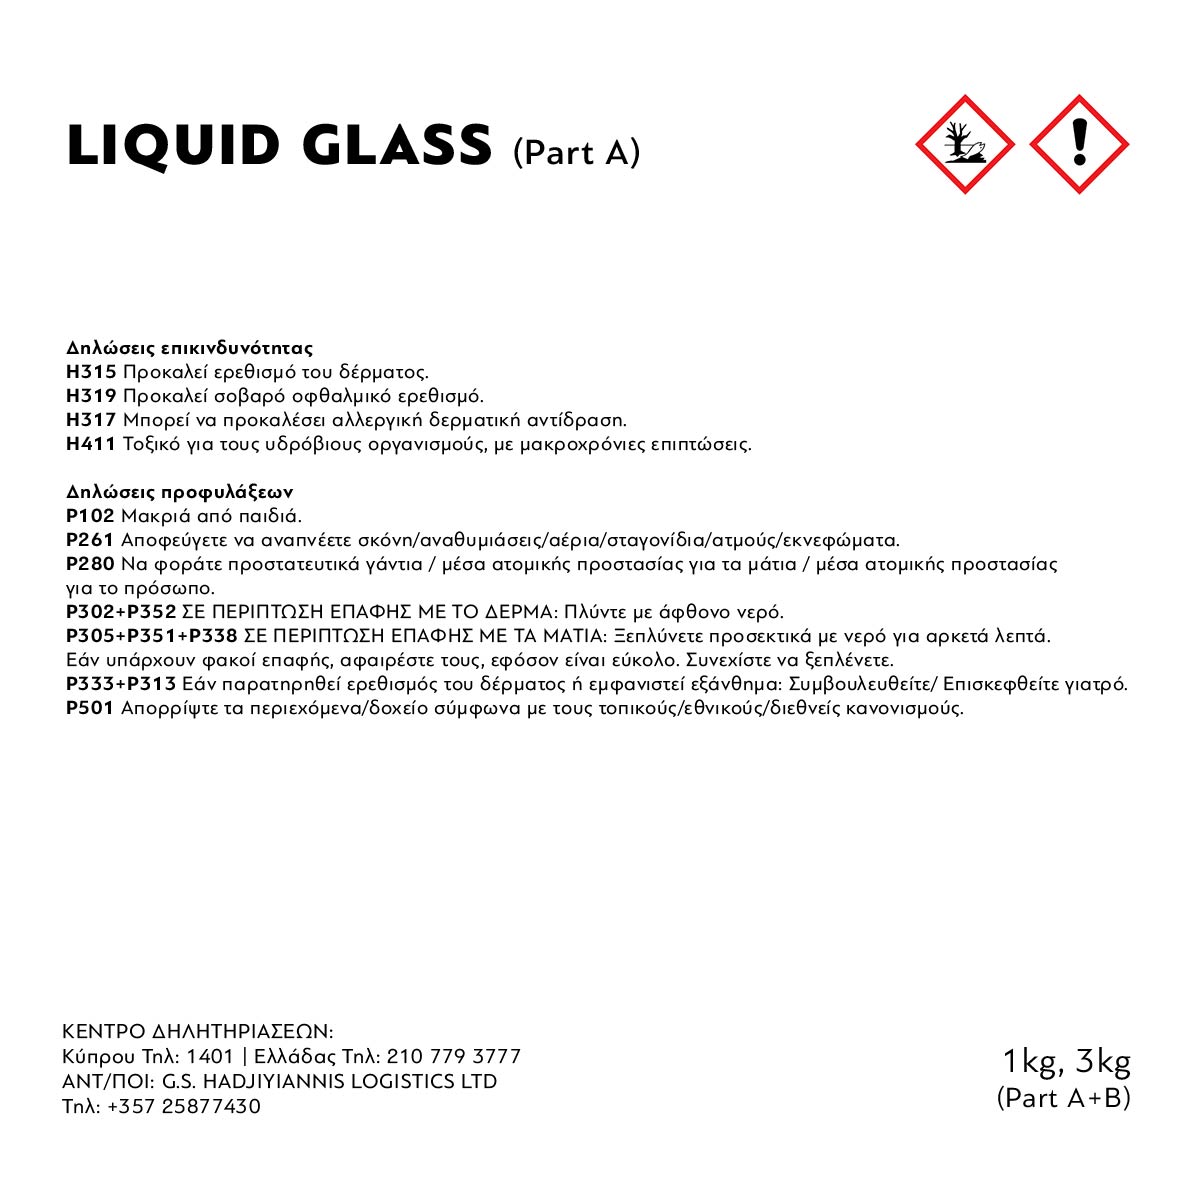 ISOMAT LIQUID GLASS EPOMAX 3KG